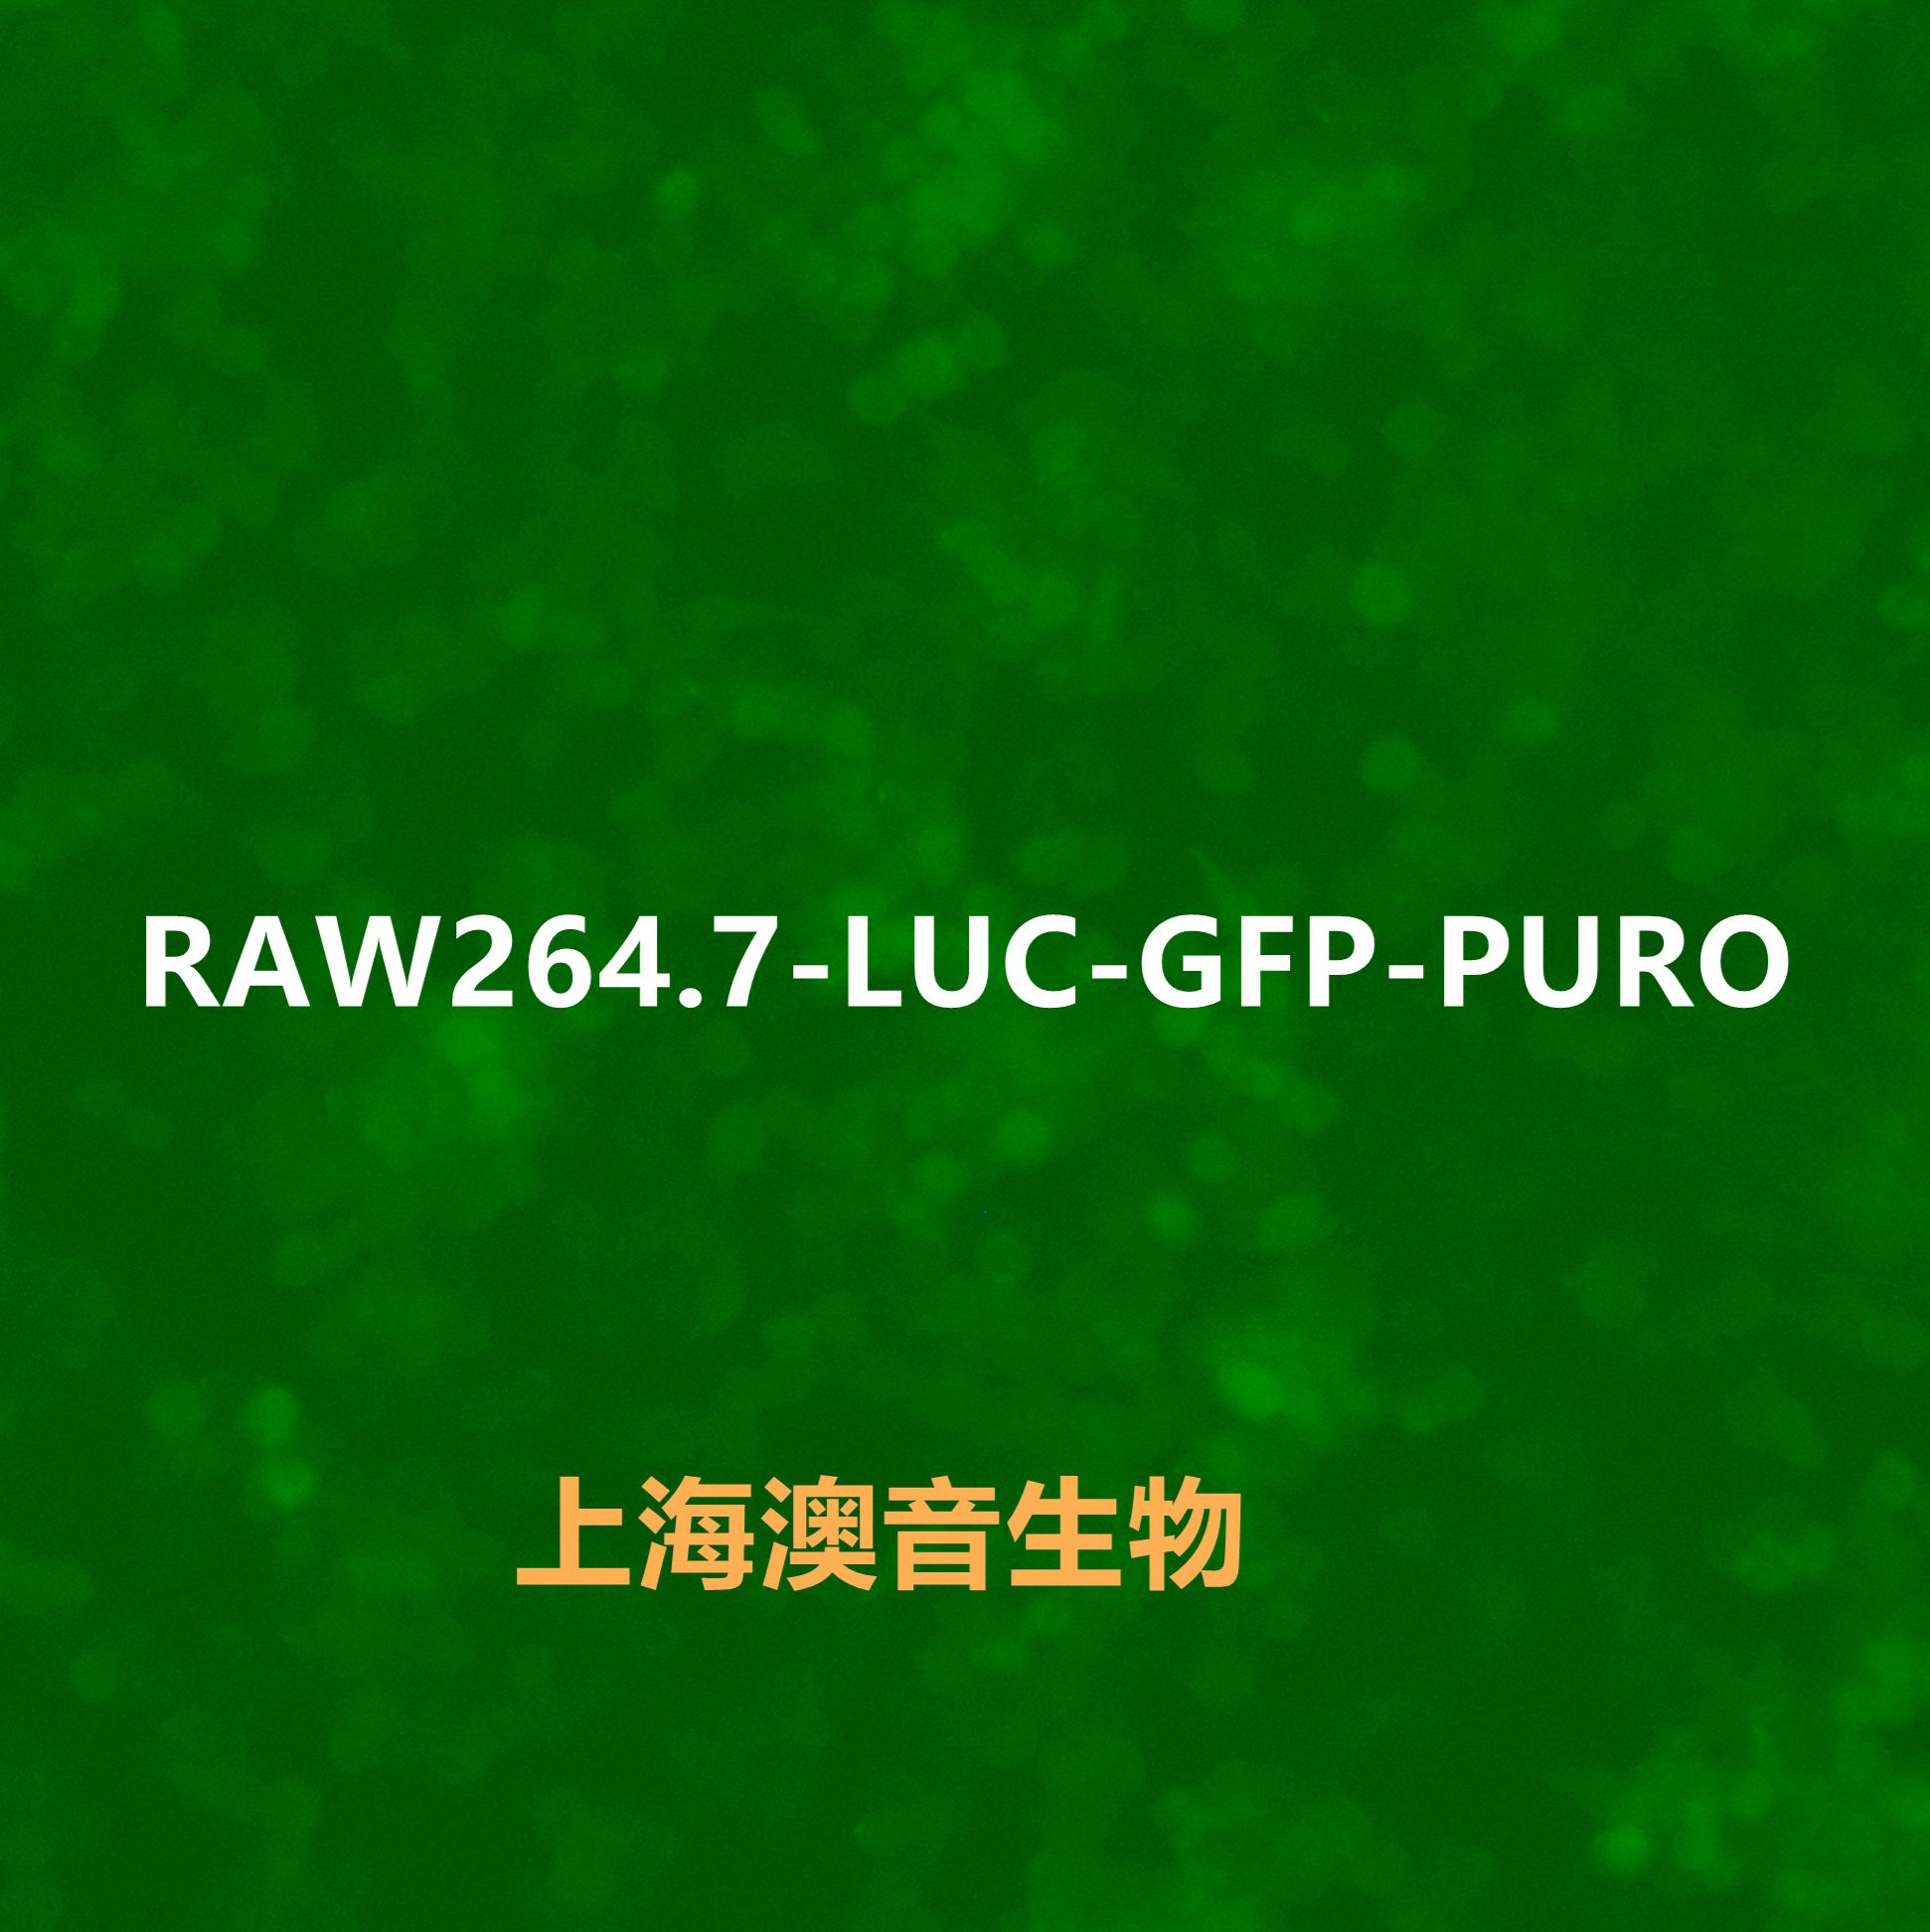 RAW 264.7-LUC-GFP-Puro【RAW264.7-LUC;RAW264.7-GFP;RAW 264.7-LUC;RAW 264.7-GFP】双标记的小鼠单核巨噬细胞白血病细胞